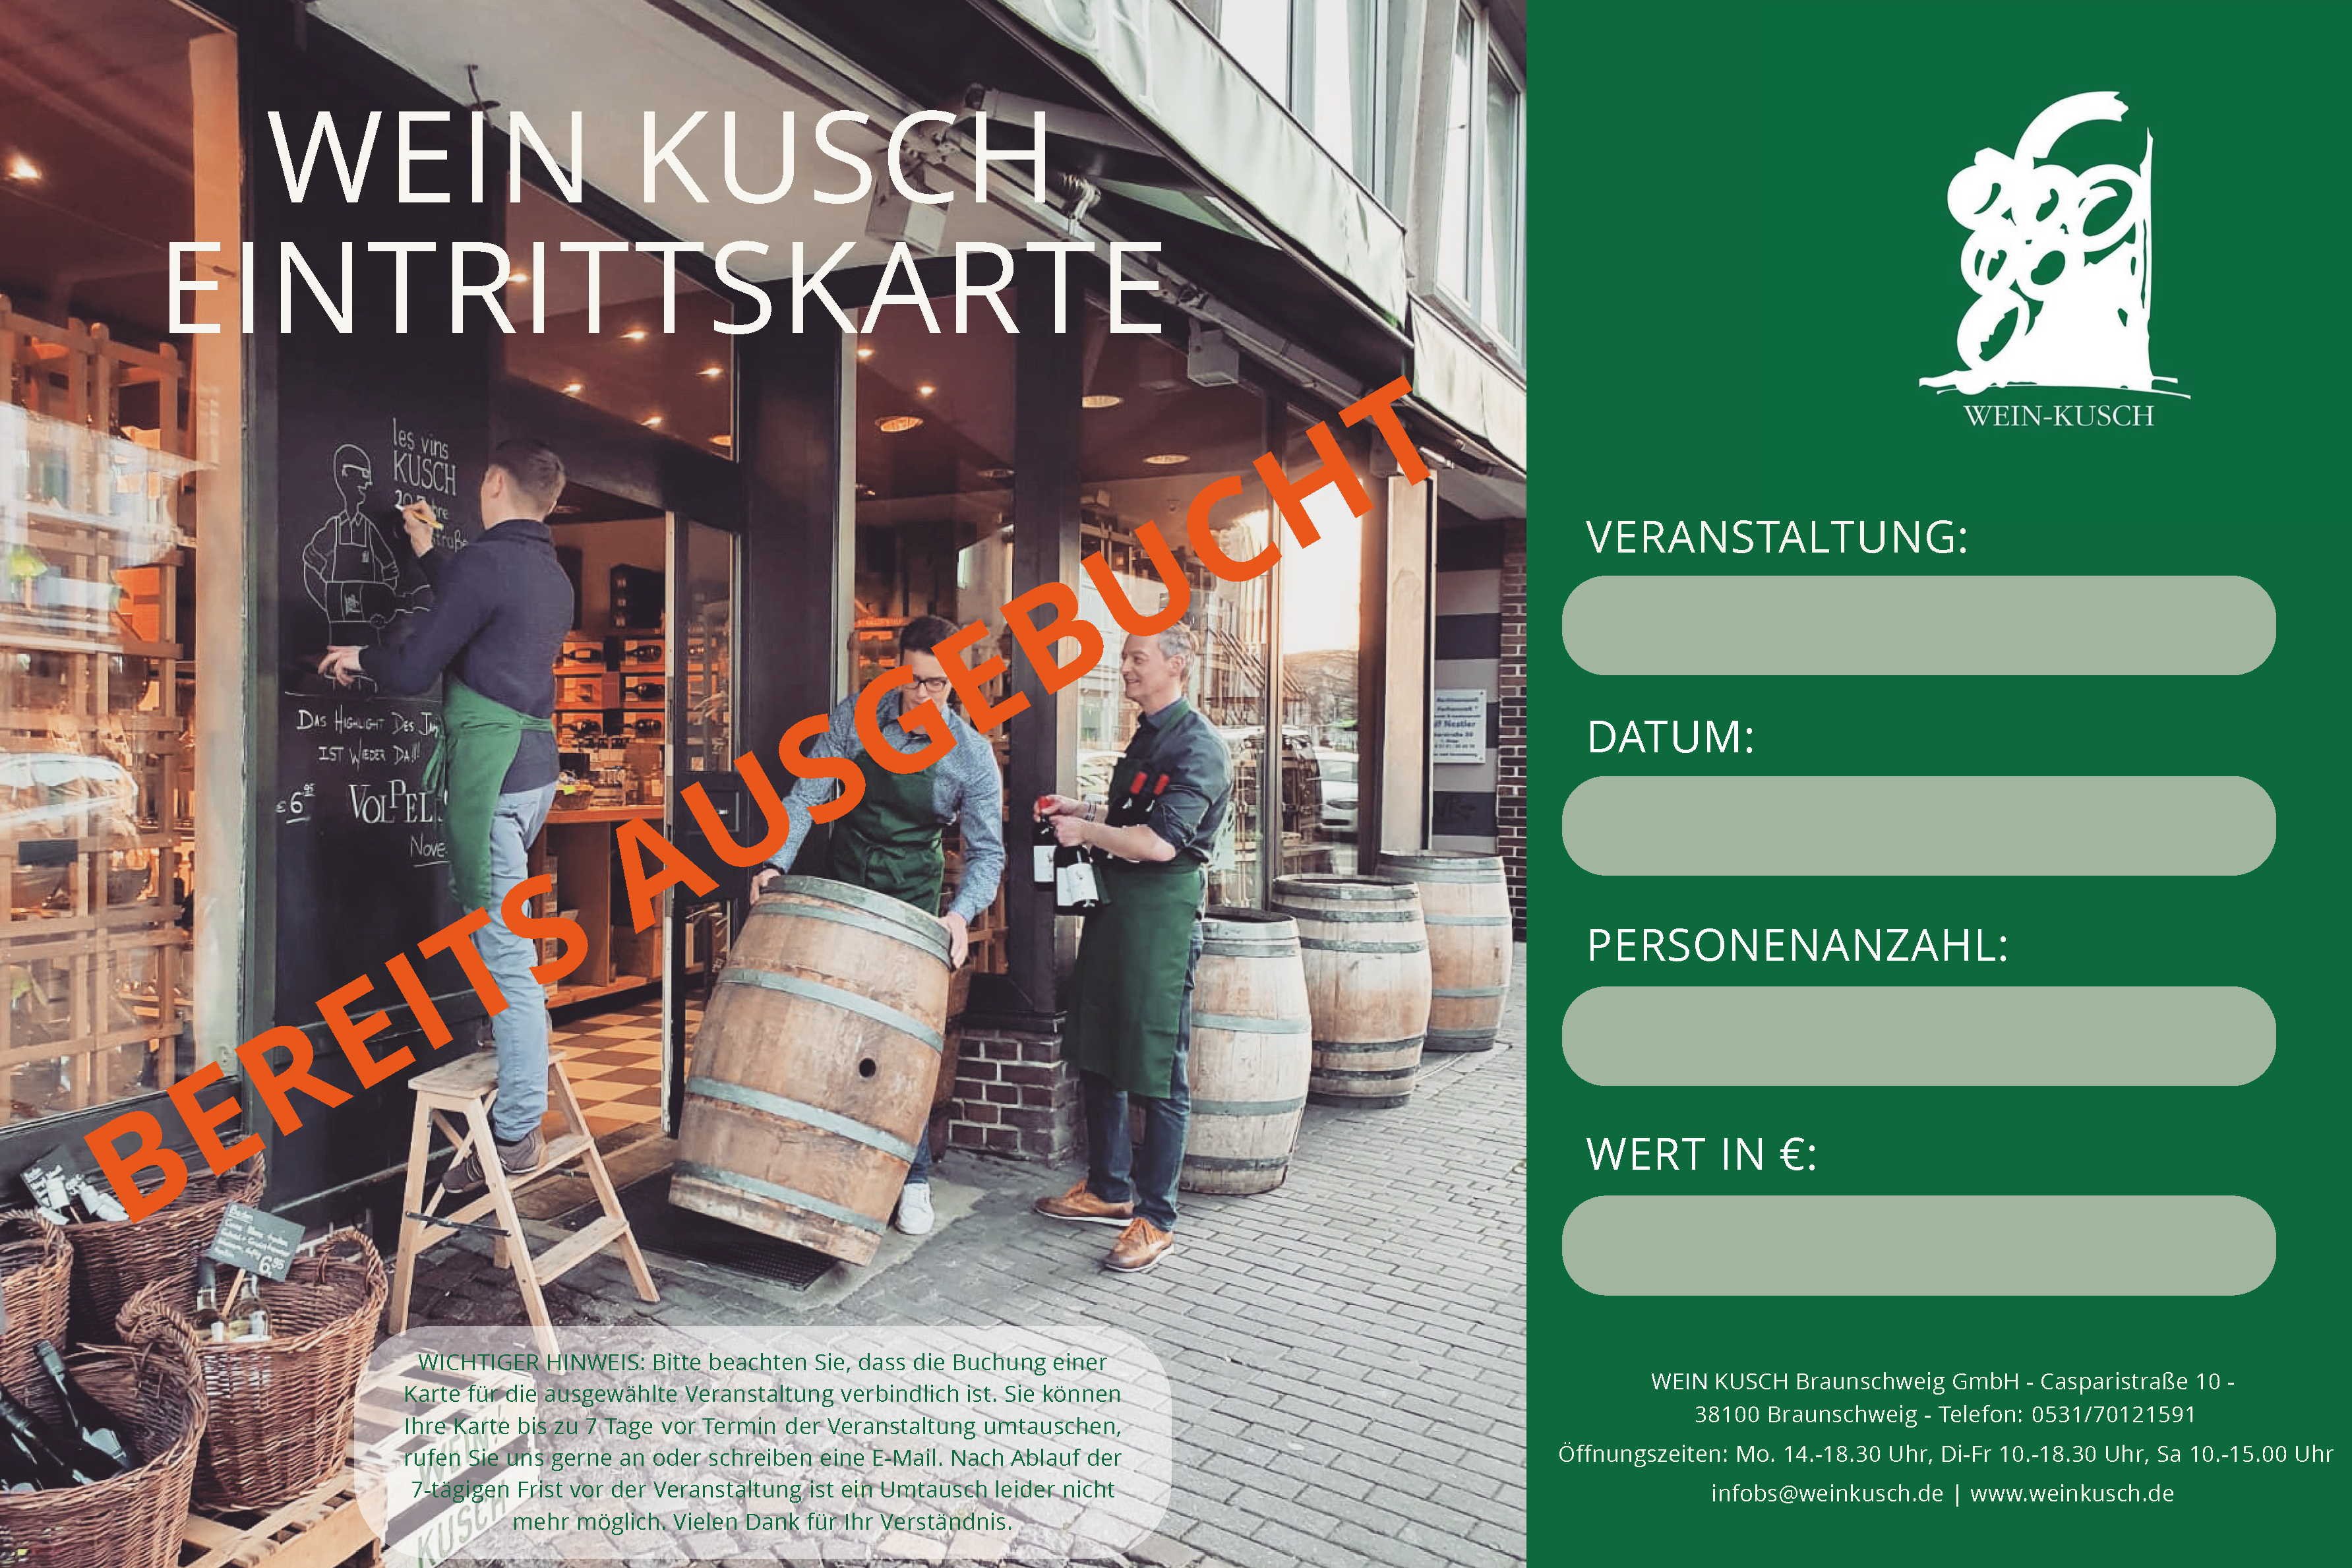 2023.03.23 - Weinprobe "Zurück in die Zukunft" in Braunschweig 19.00 Uhr